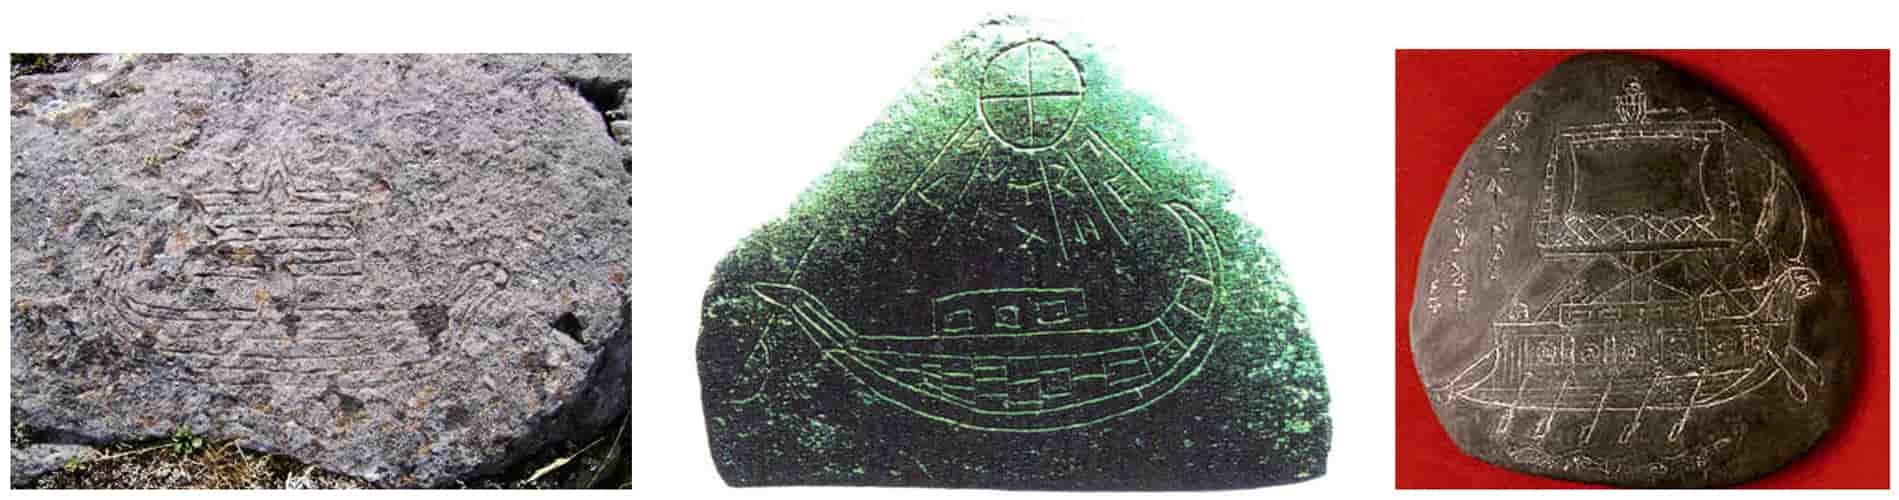 Το αρχαιότερο πλοίο των ακτών των Βίκινγκς, το Hjortspring, έχει τη μορφή των πετρόγλυφων μινωικών καραβιών